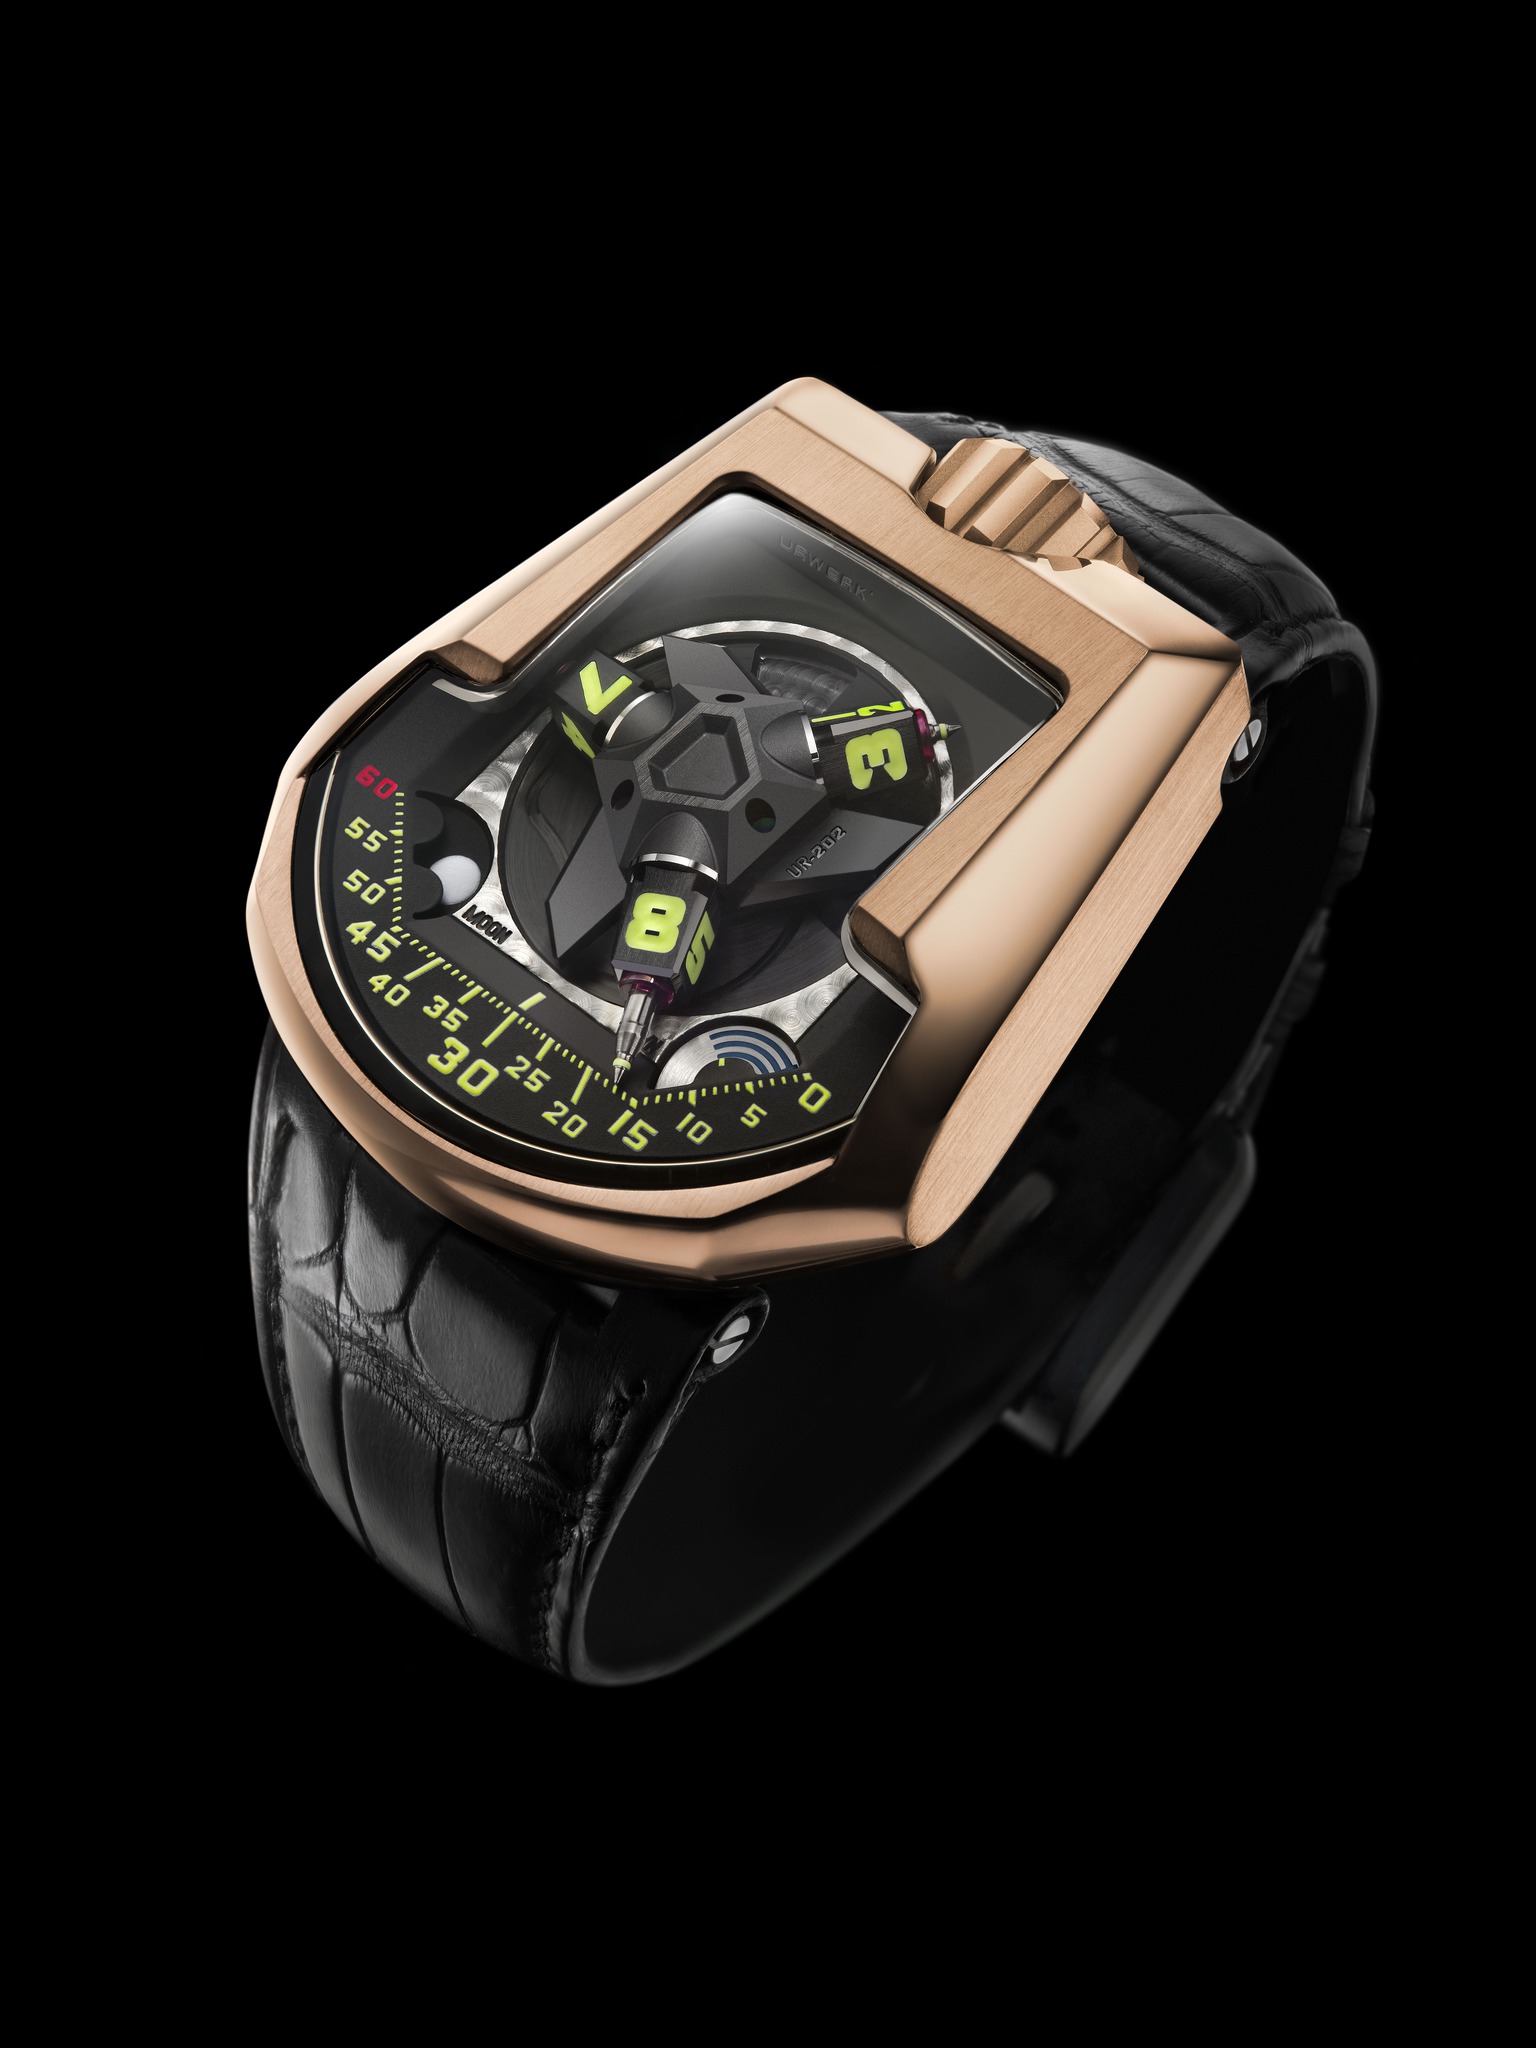 Replica Urwerk UR-202 Red Gold Watch [UR-202 Red Gold] : Perfect Wrist ...